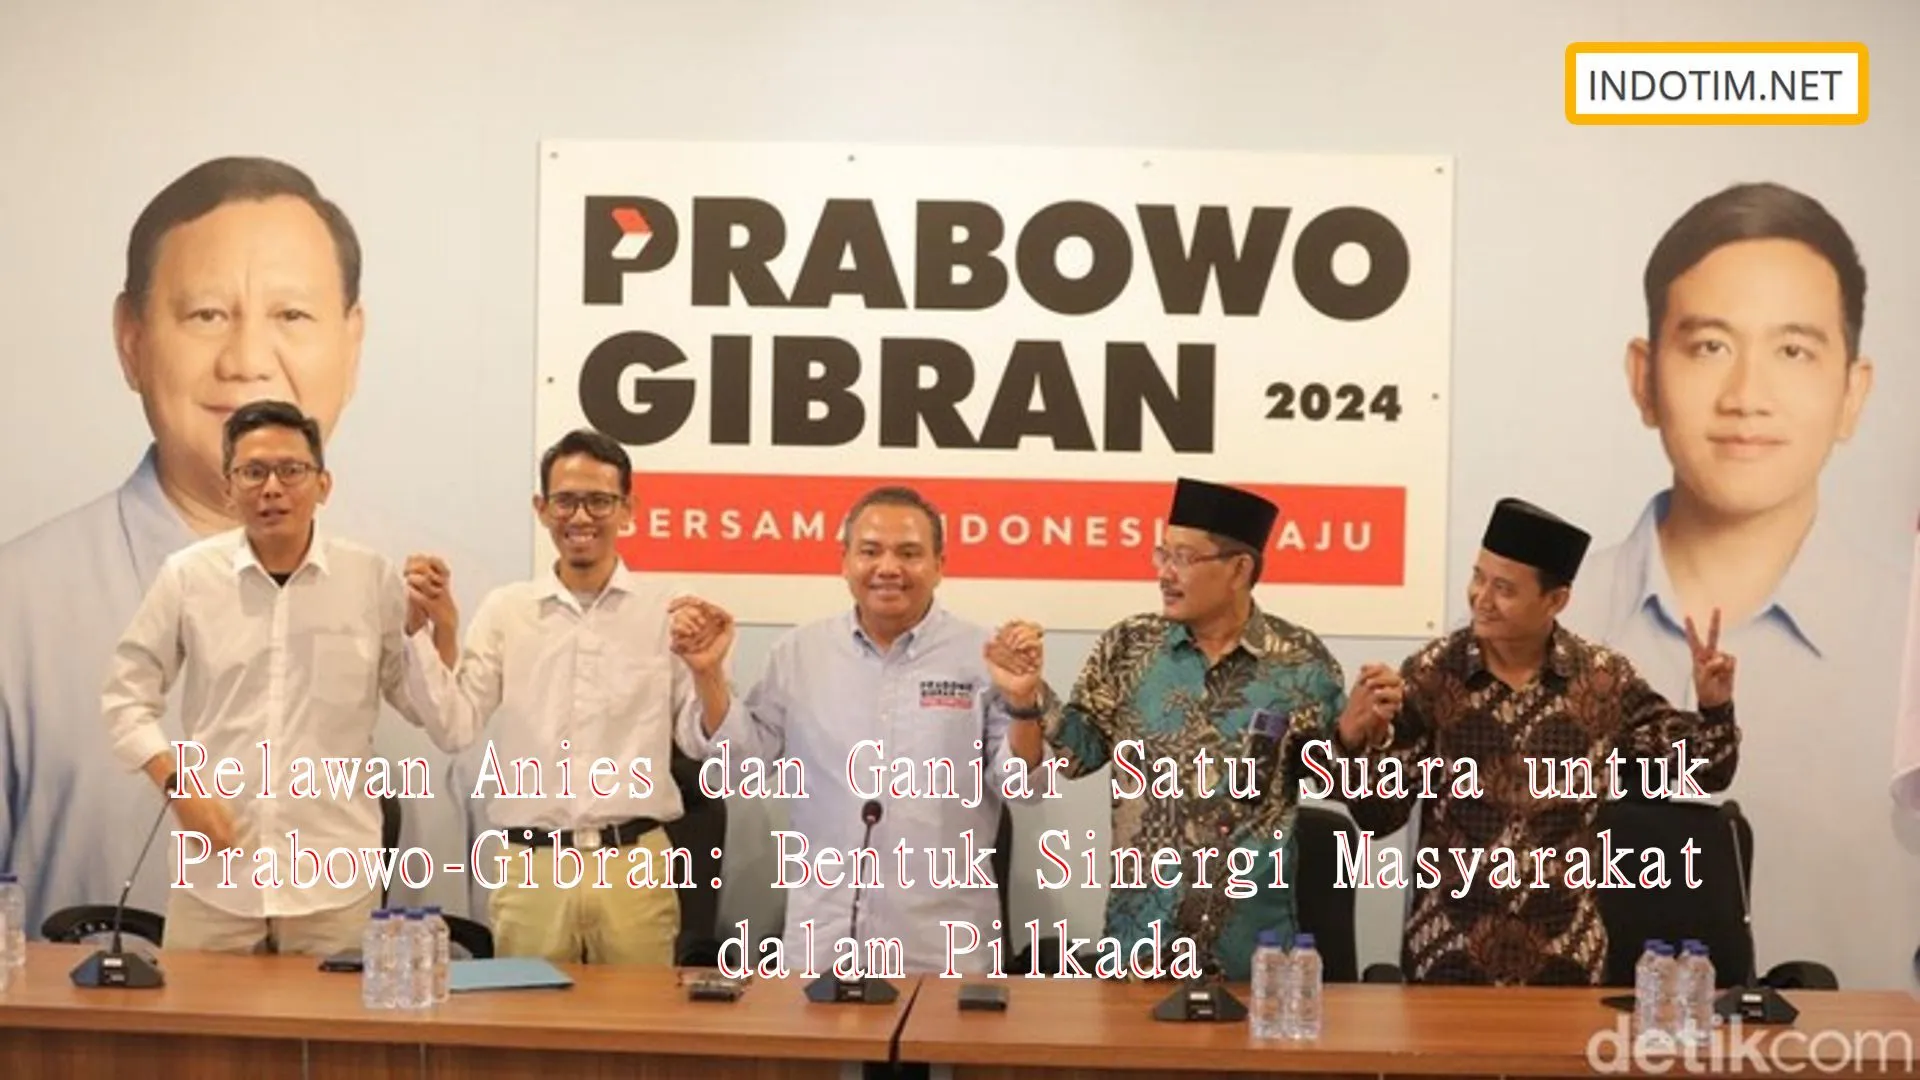 Relawan Anies dan Ganjar Satu Suara untuk Prabowo-Gibran: Bentuk Sinergi Masyarakat dalam Pilkada